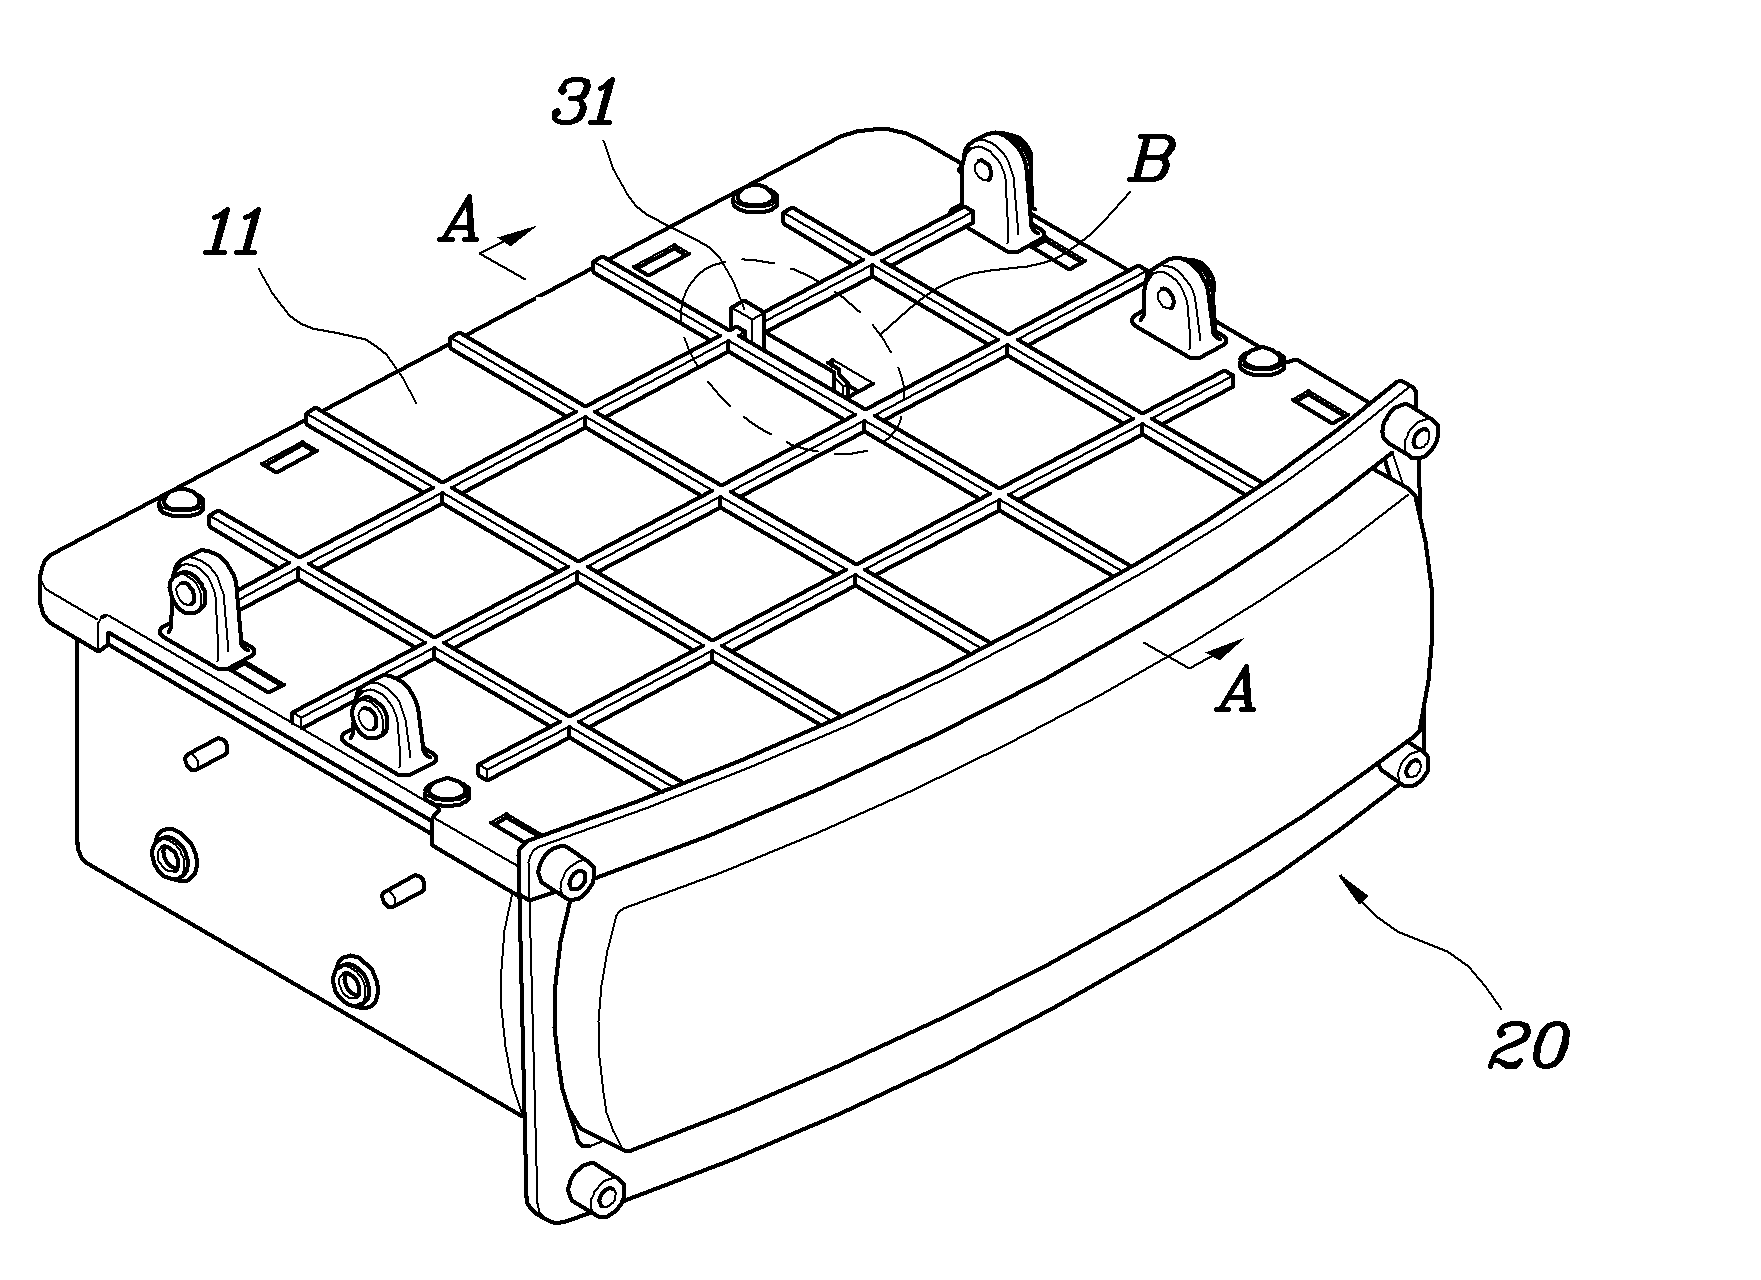 Tray apparatus